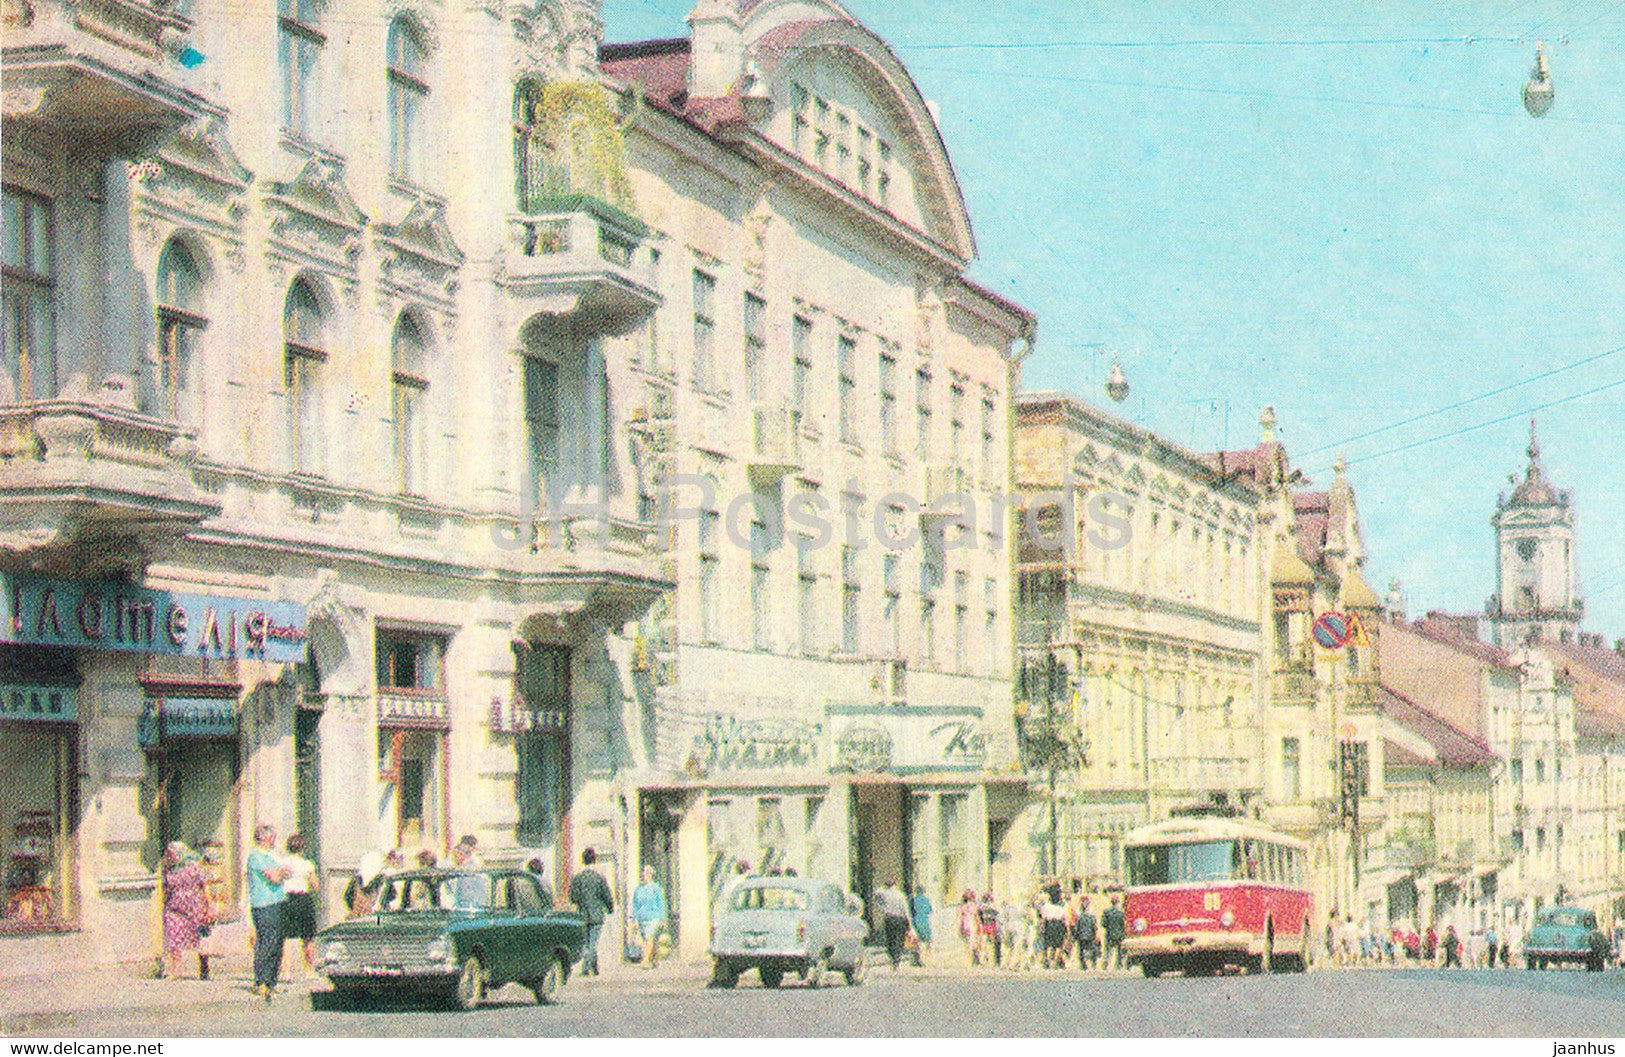 Chernivtsi - Lenin street - car Moskvich - bus - Ukraine USSR - unused - JH Postcards